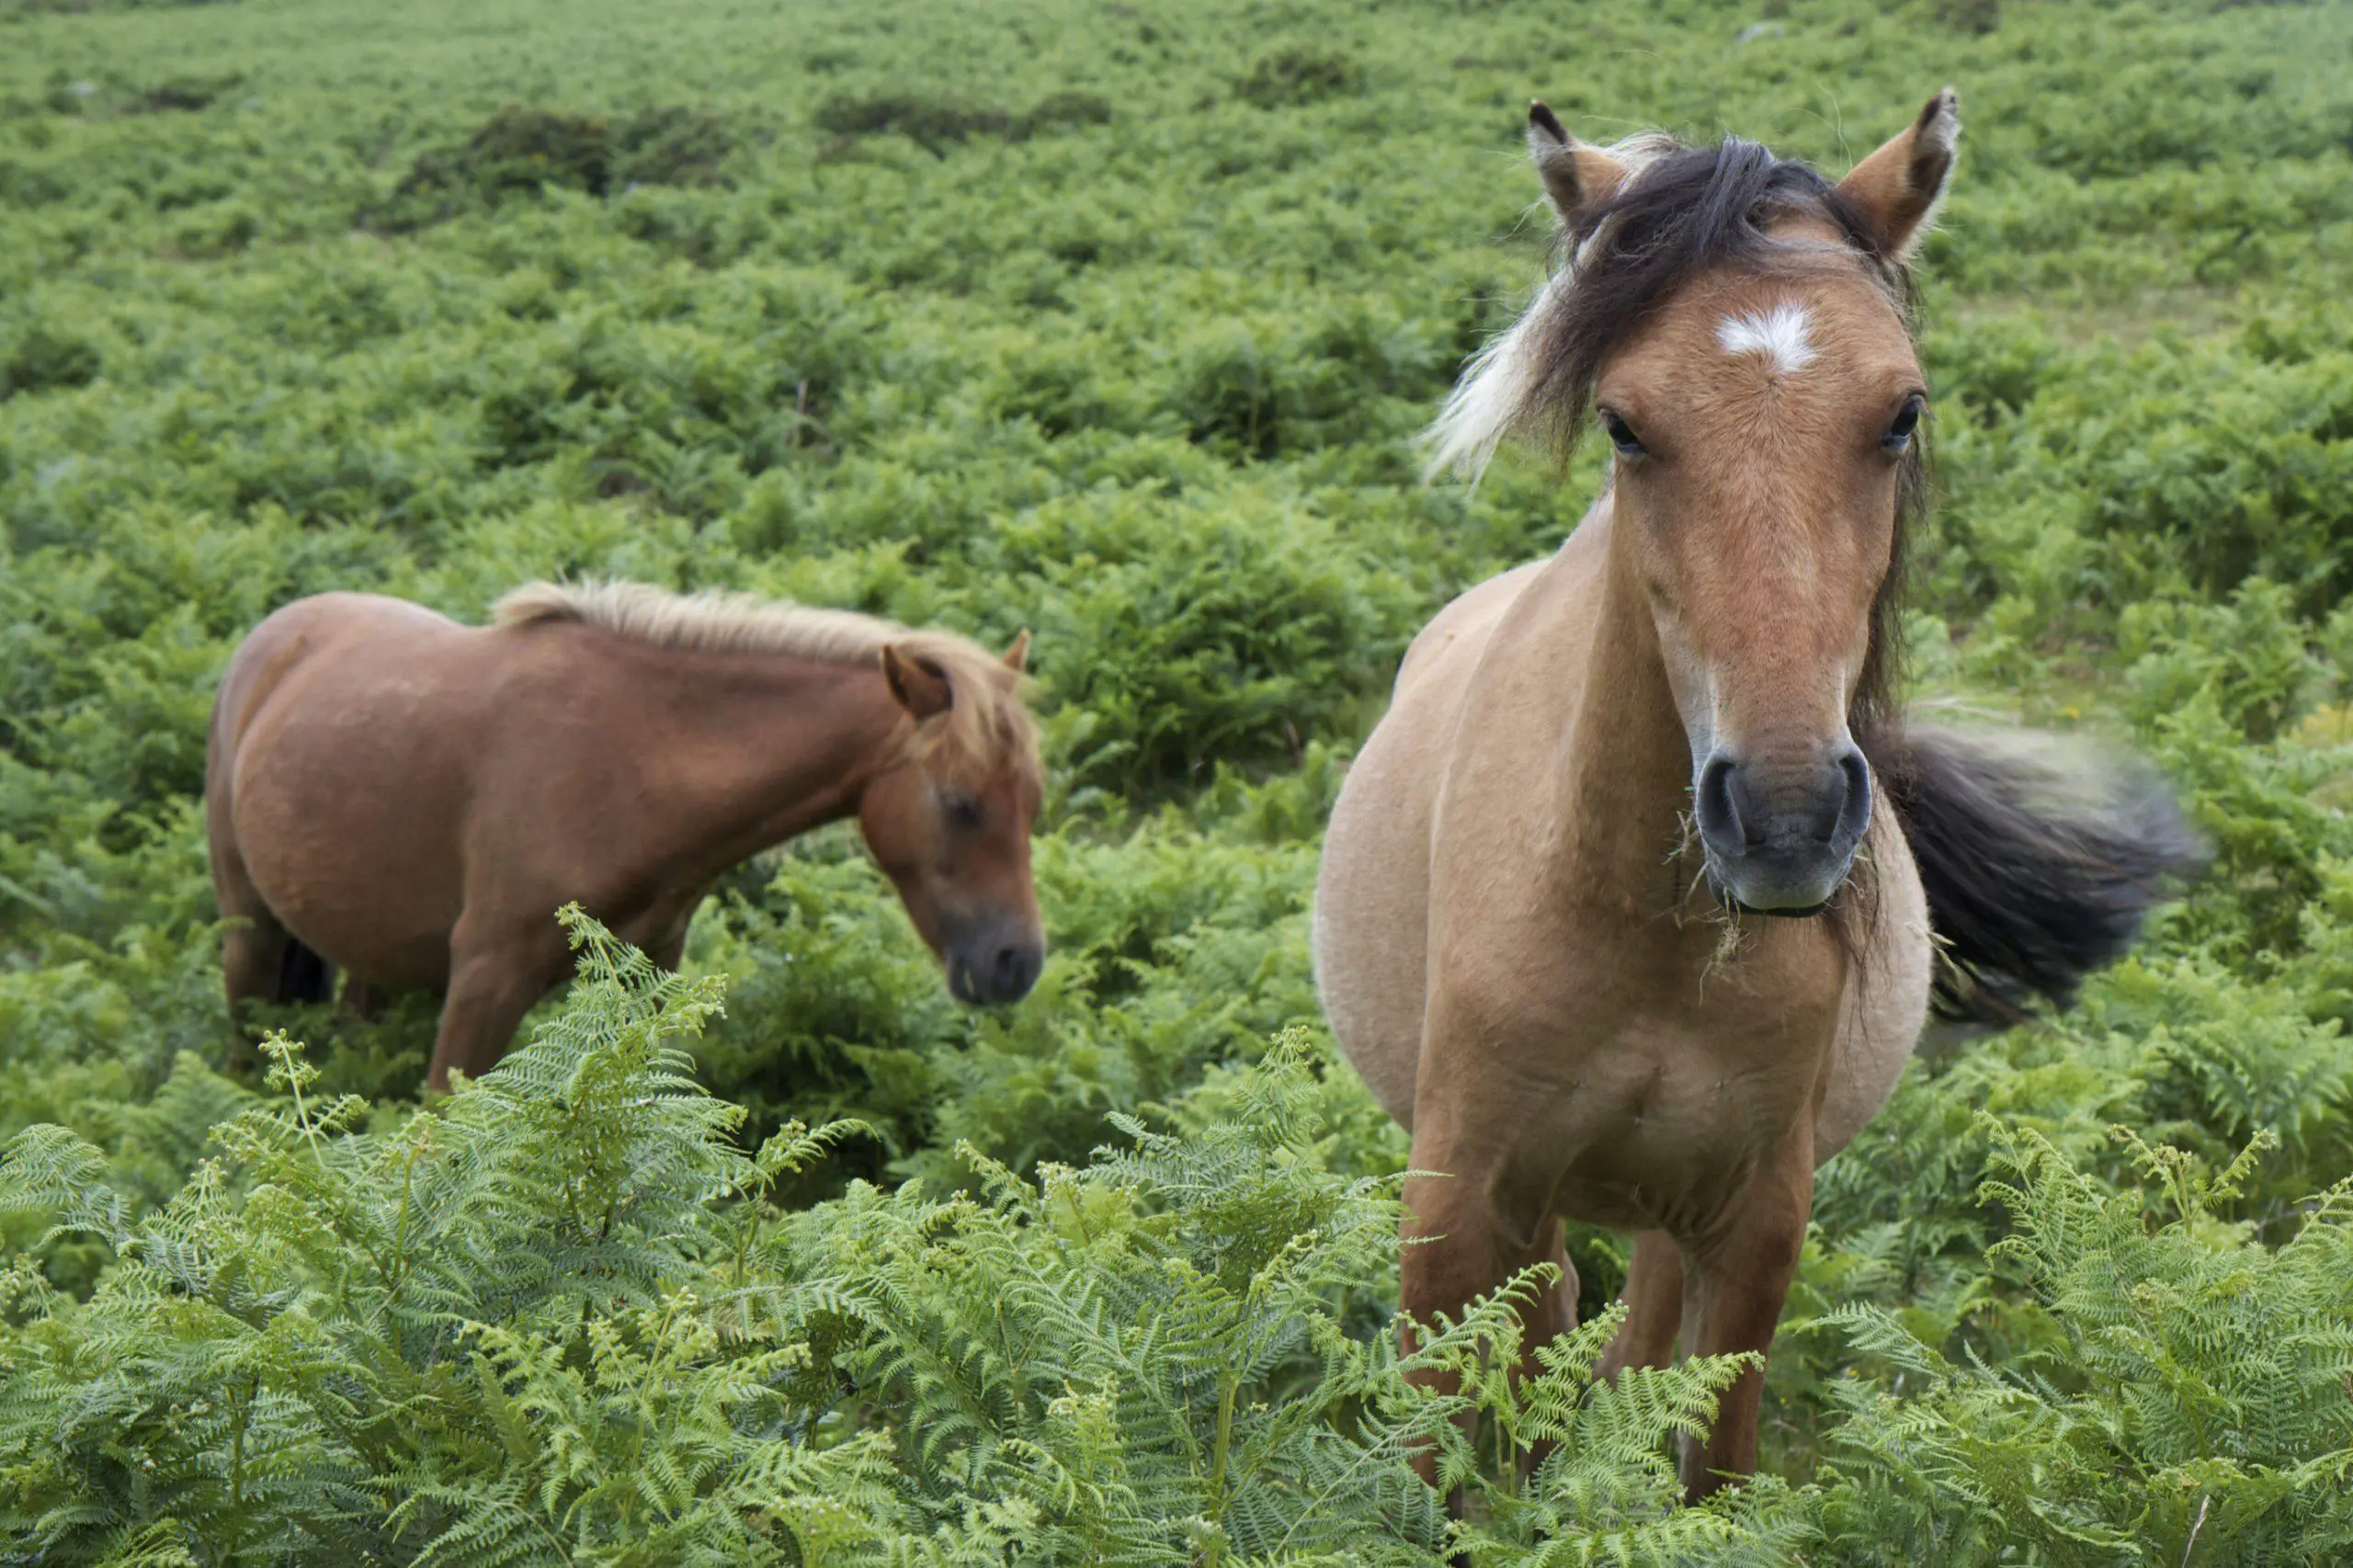 Two Dartmoor Ponies on Dartmoor England in the green ferns